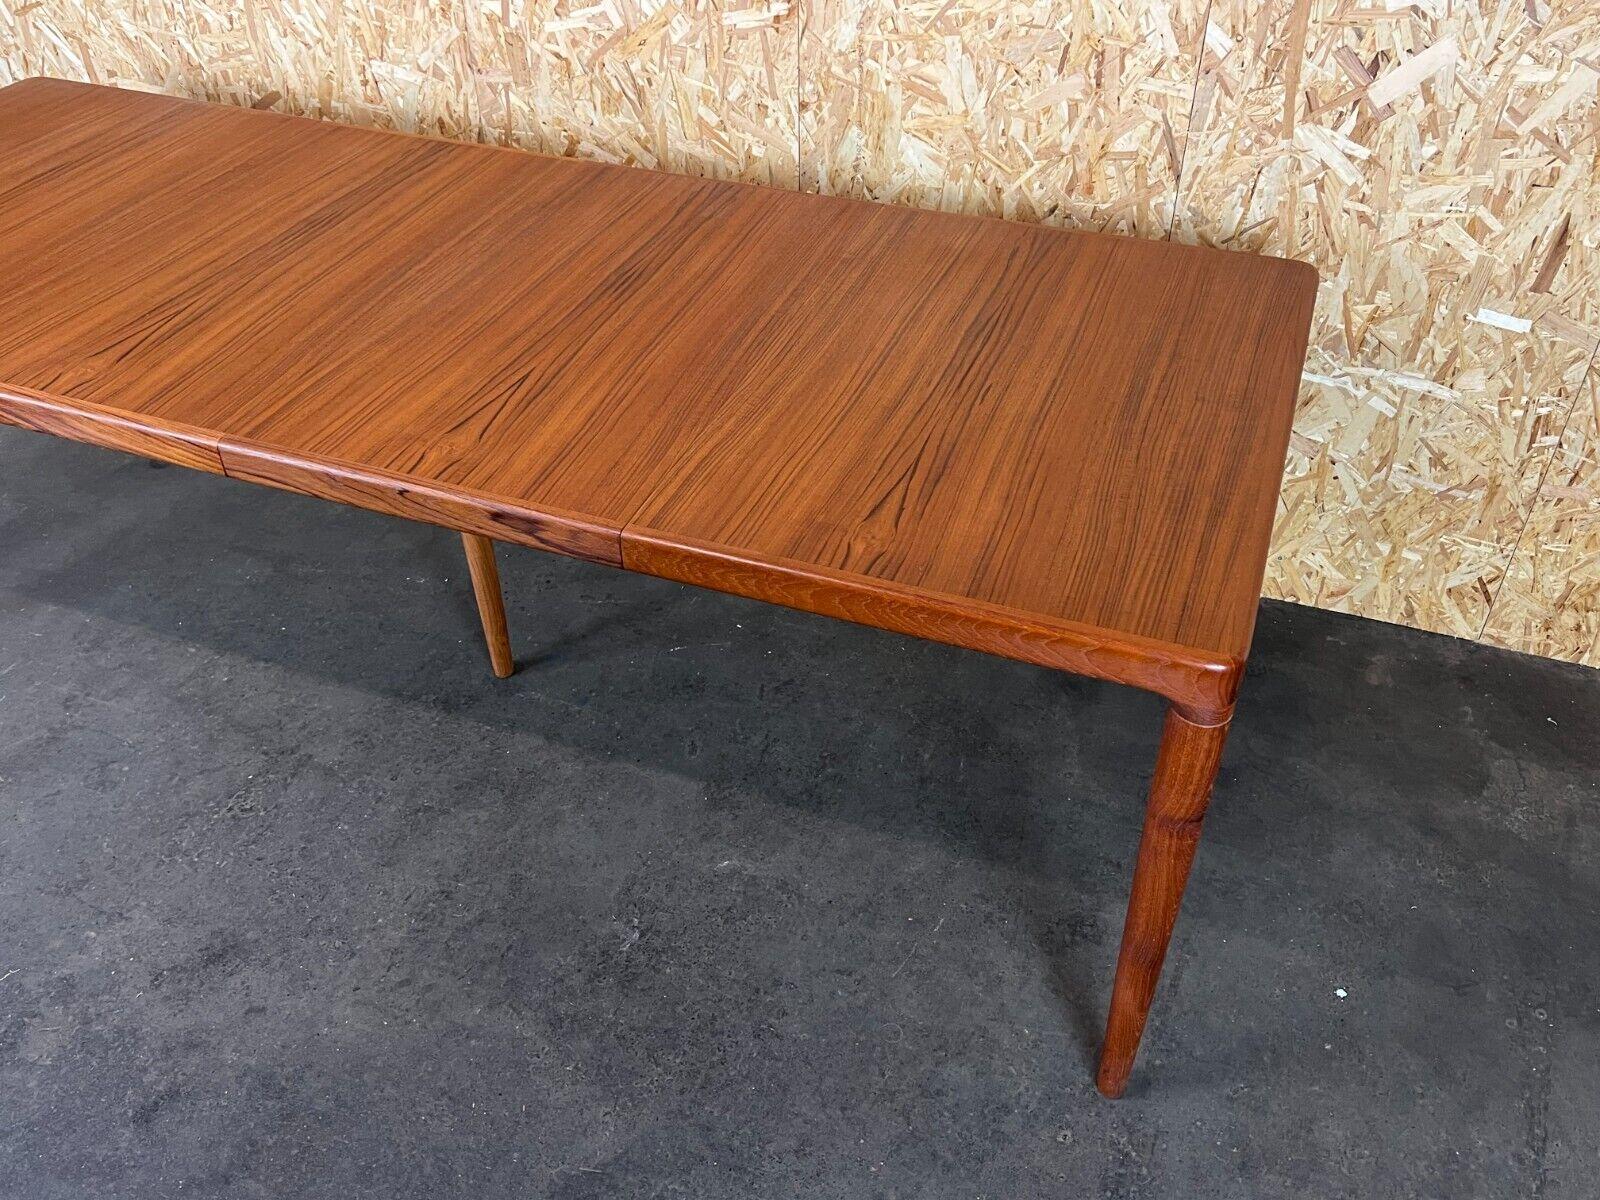 60s 70s Teak Dining Table Danish Modern Design Denmark 60s 70s For Sale 1